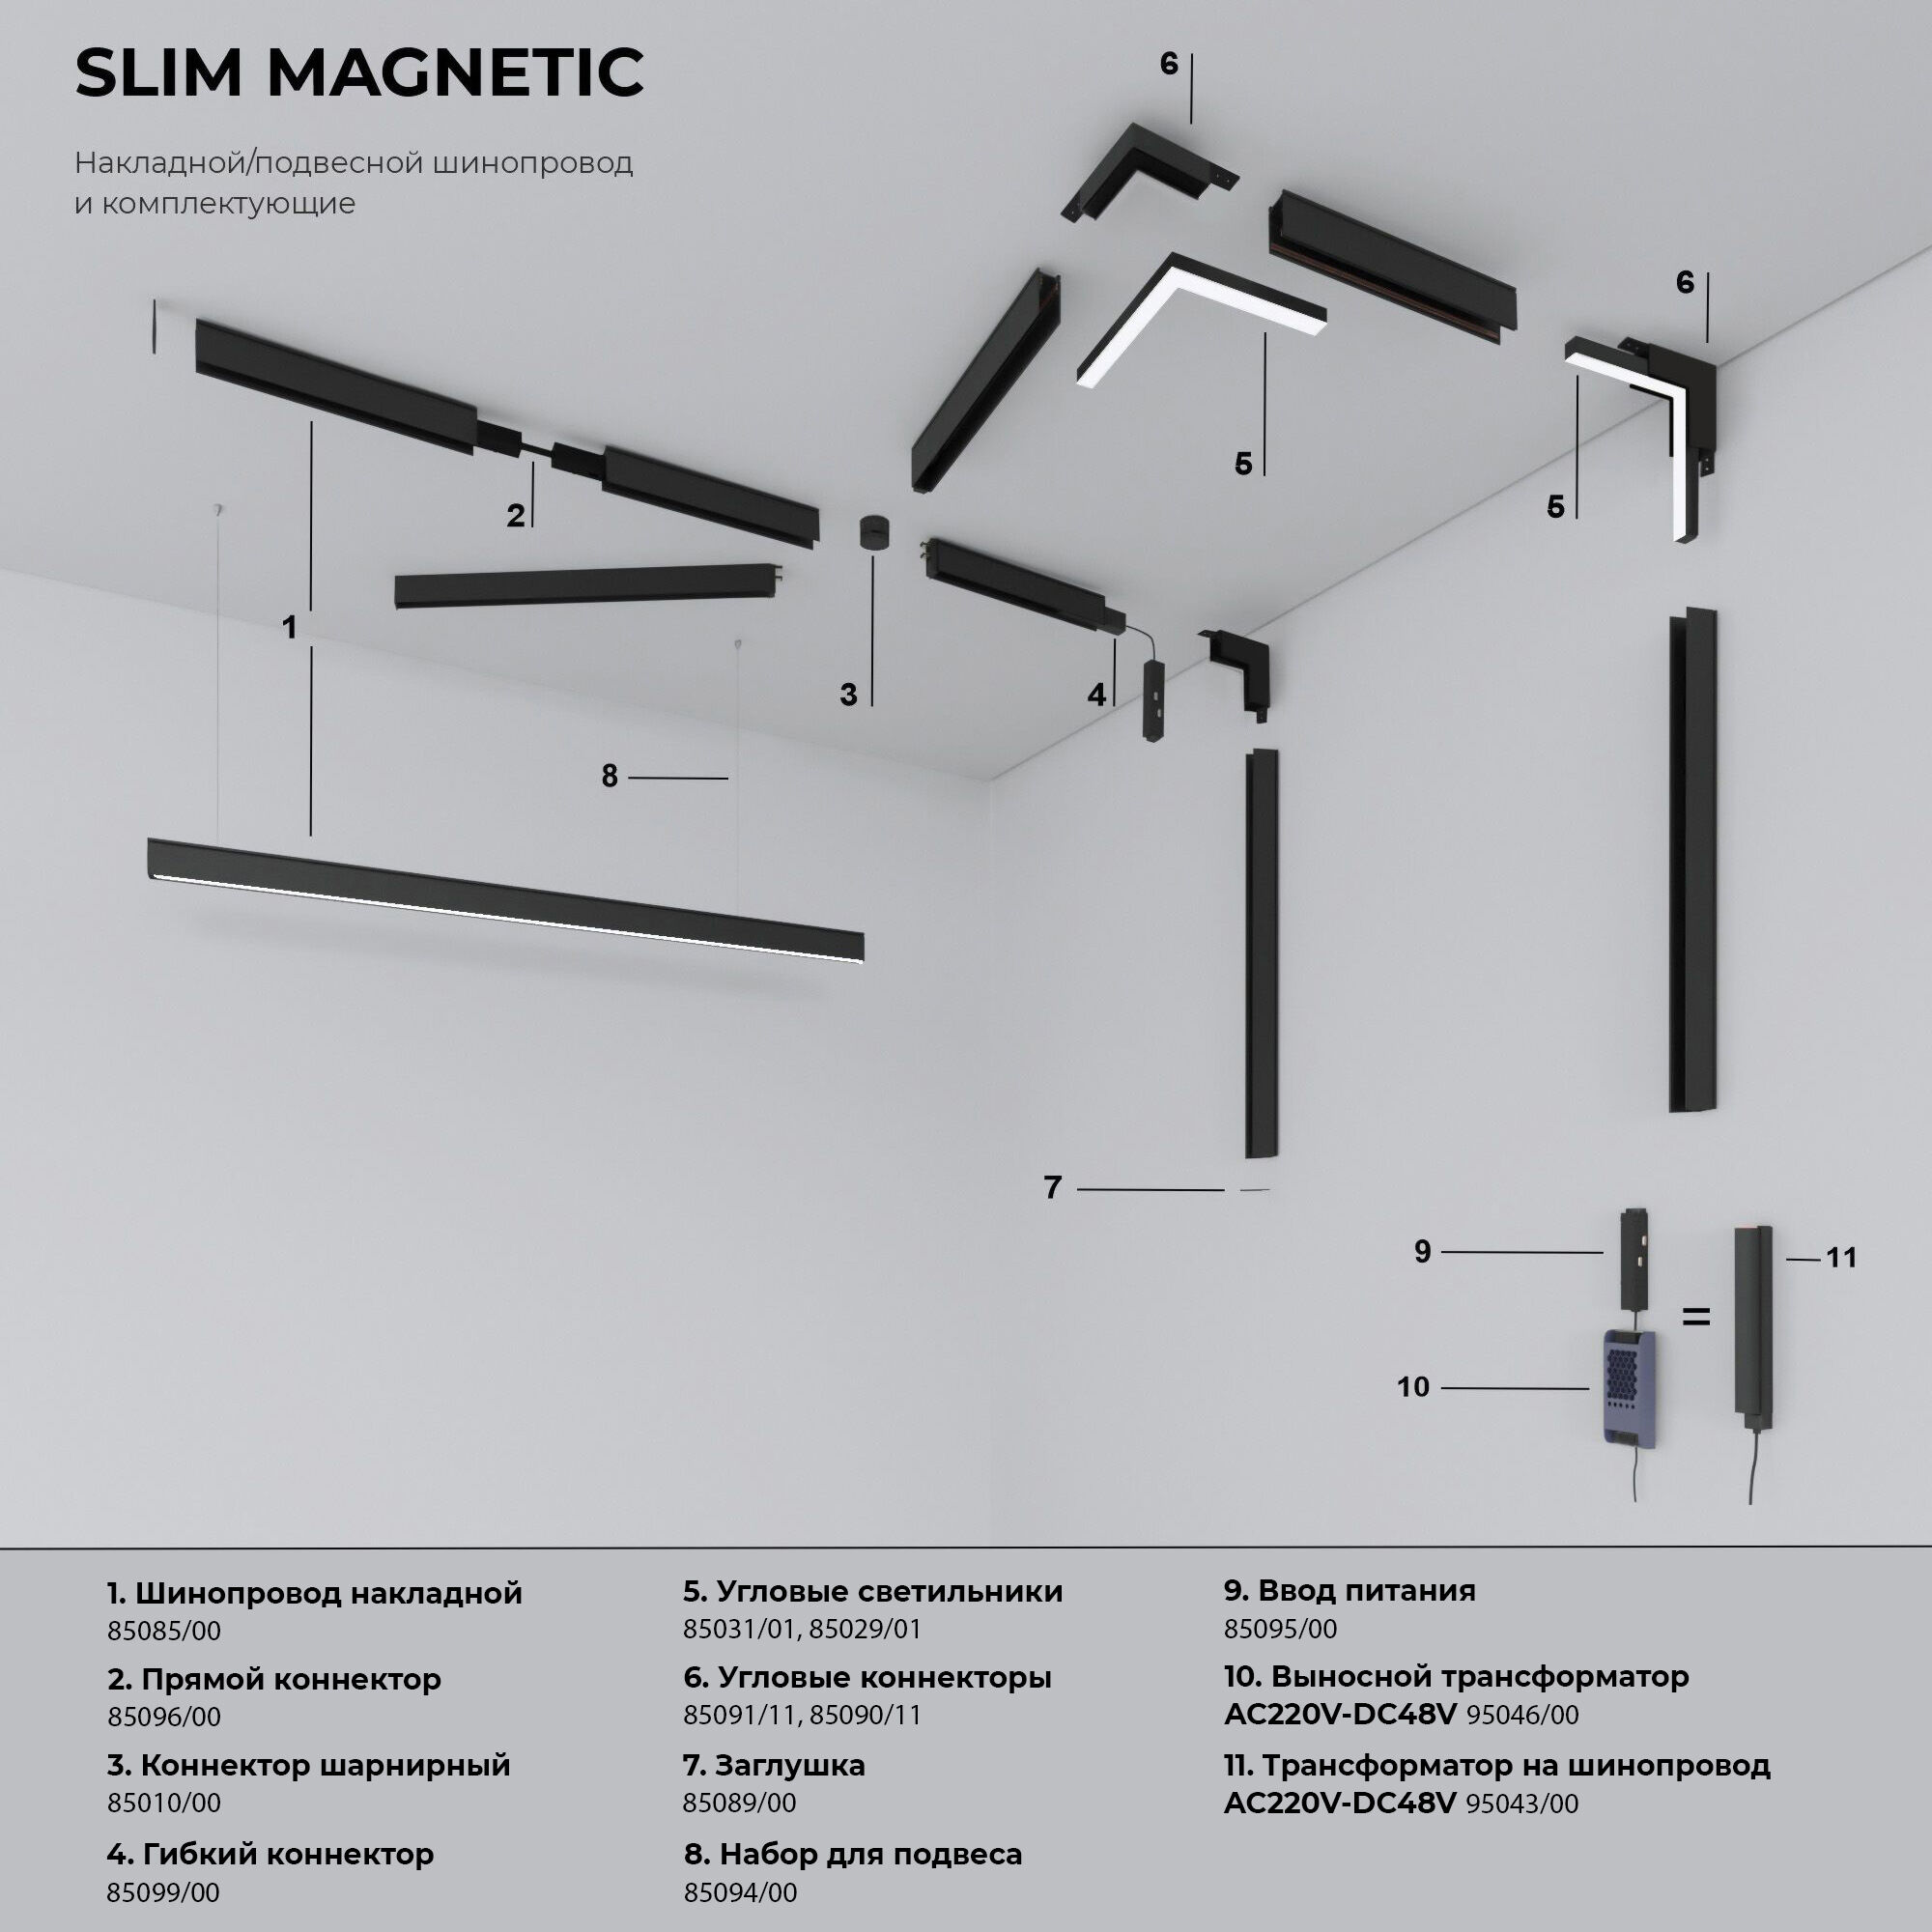 Slim Magnetic прямой коннектор и планка 1 шт 85096/00